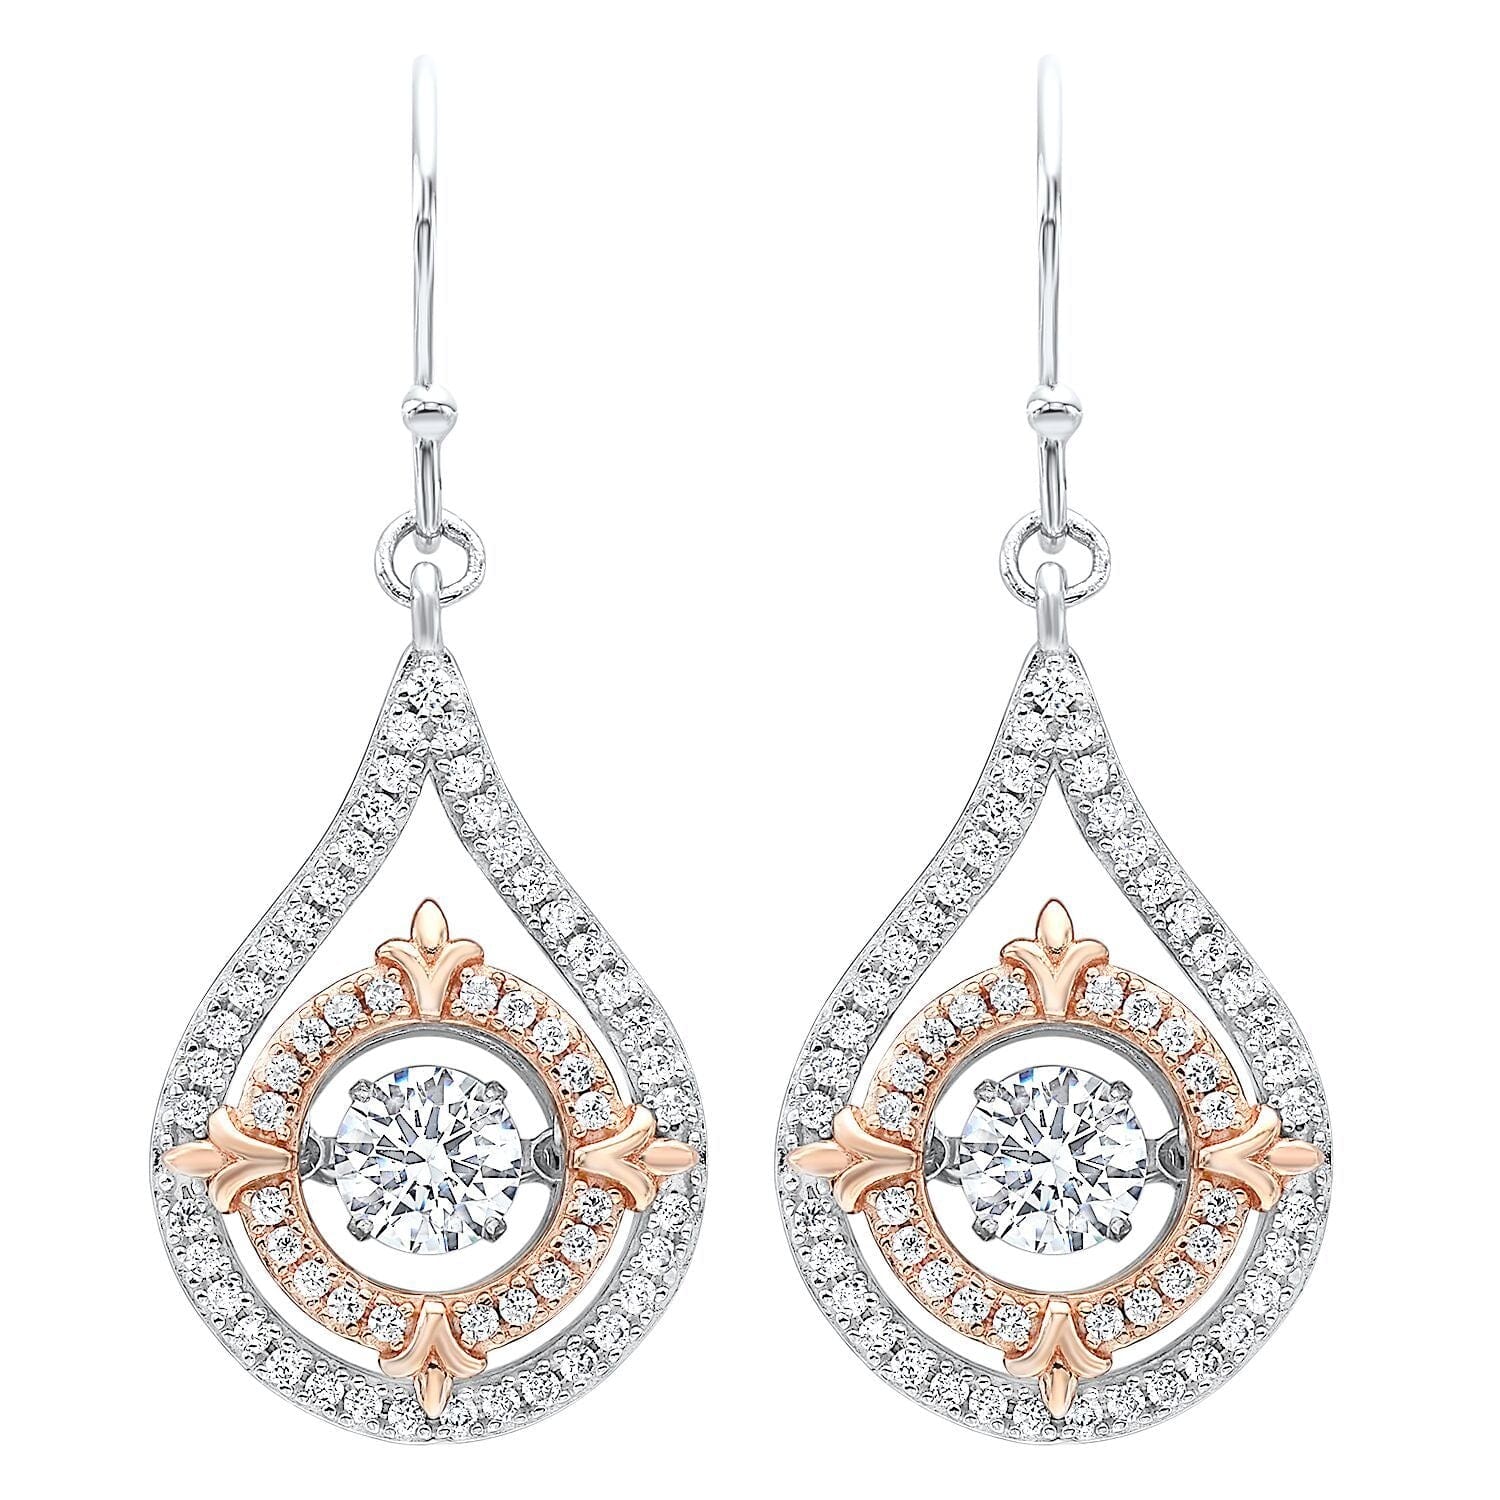 BW James Jewelers Earrings Silver Teardrop Earrings